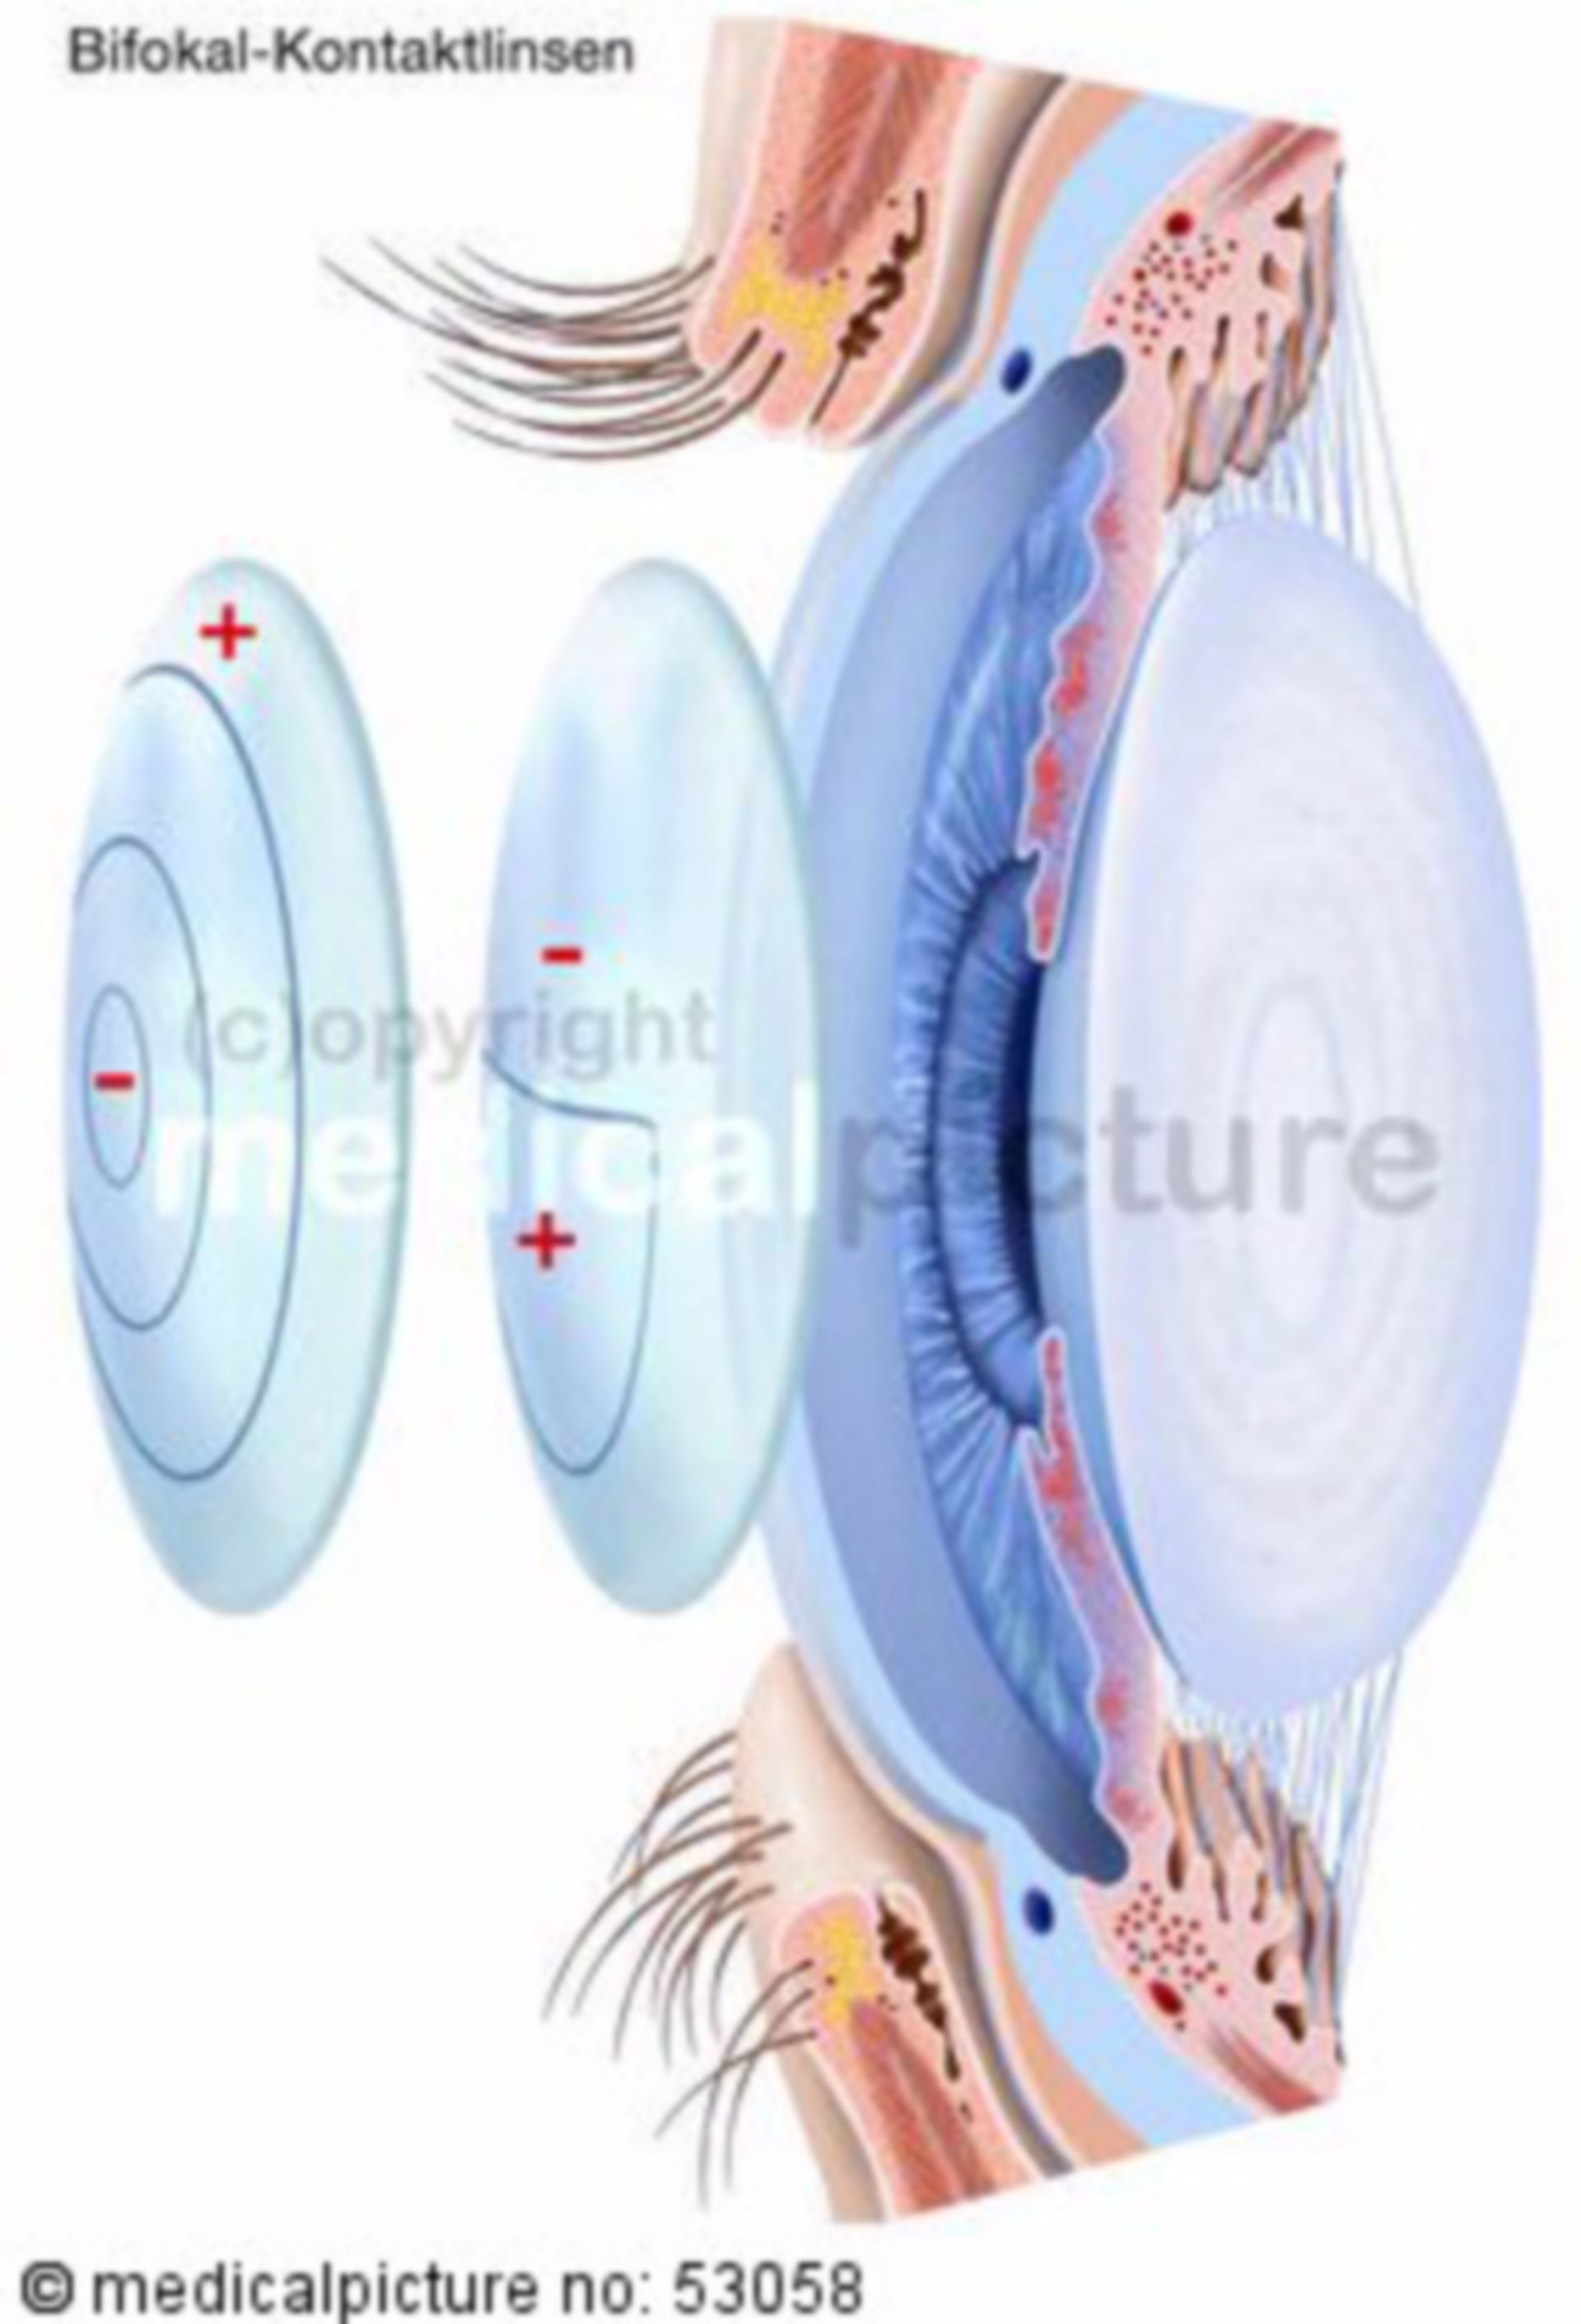  Bifokale Kontaktlinsen 